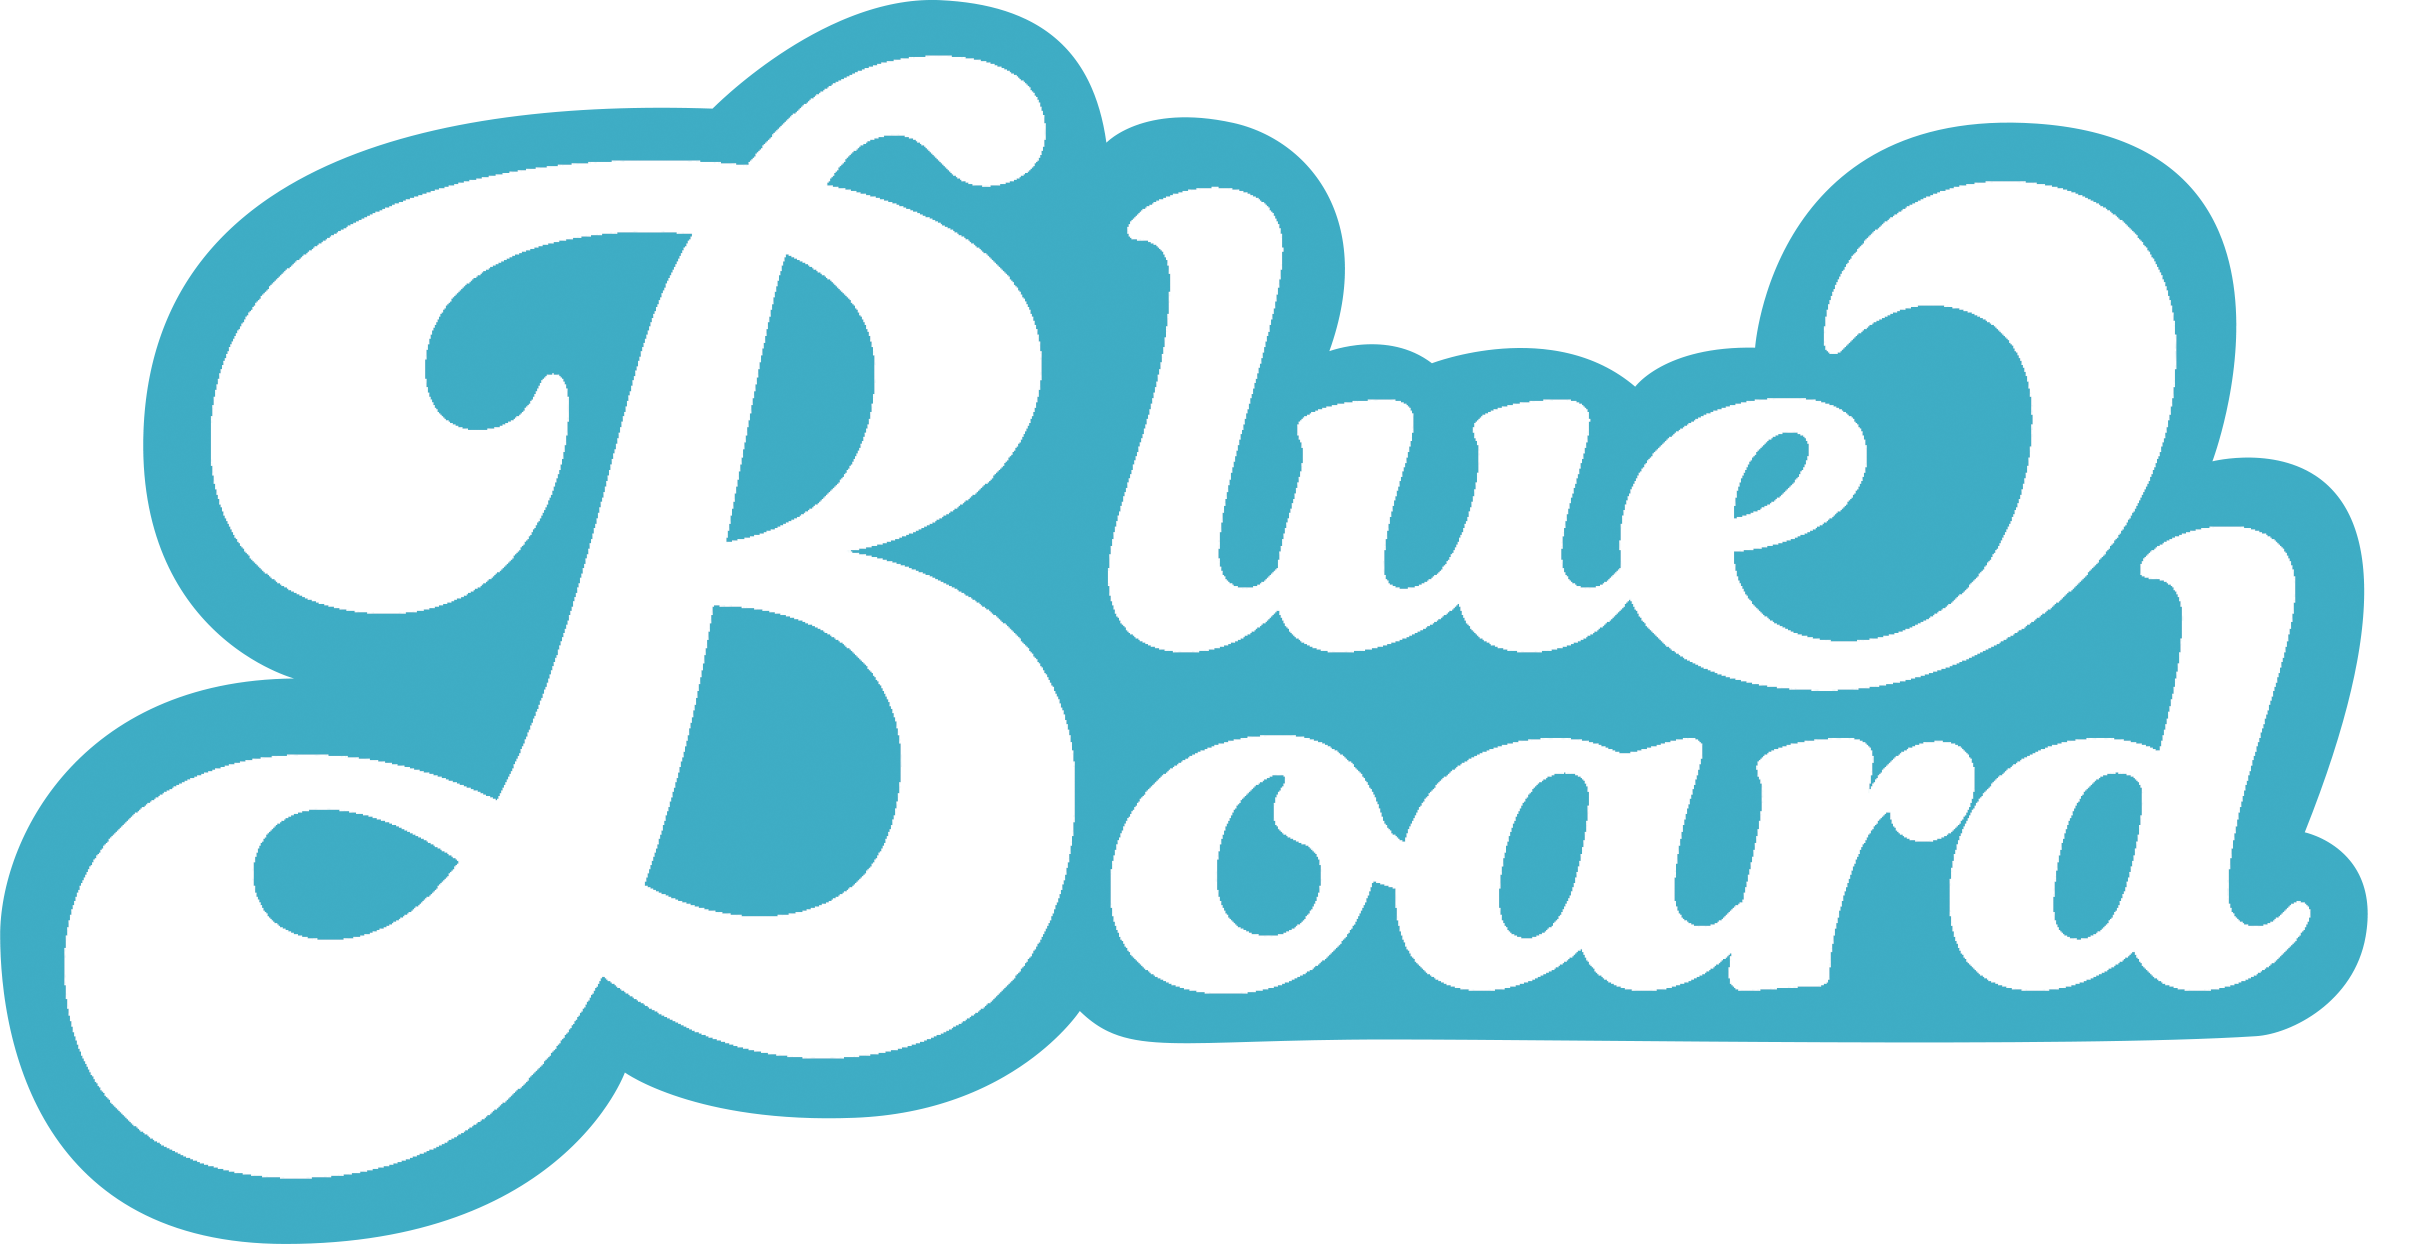 Meet Blueboard Employee Rewards | Blueboard.com